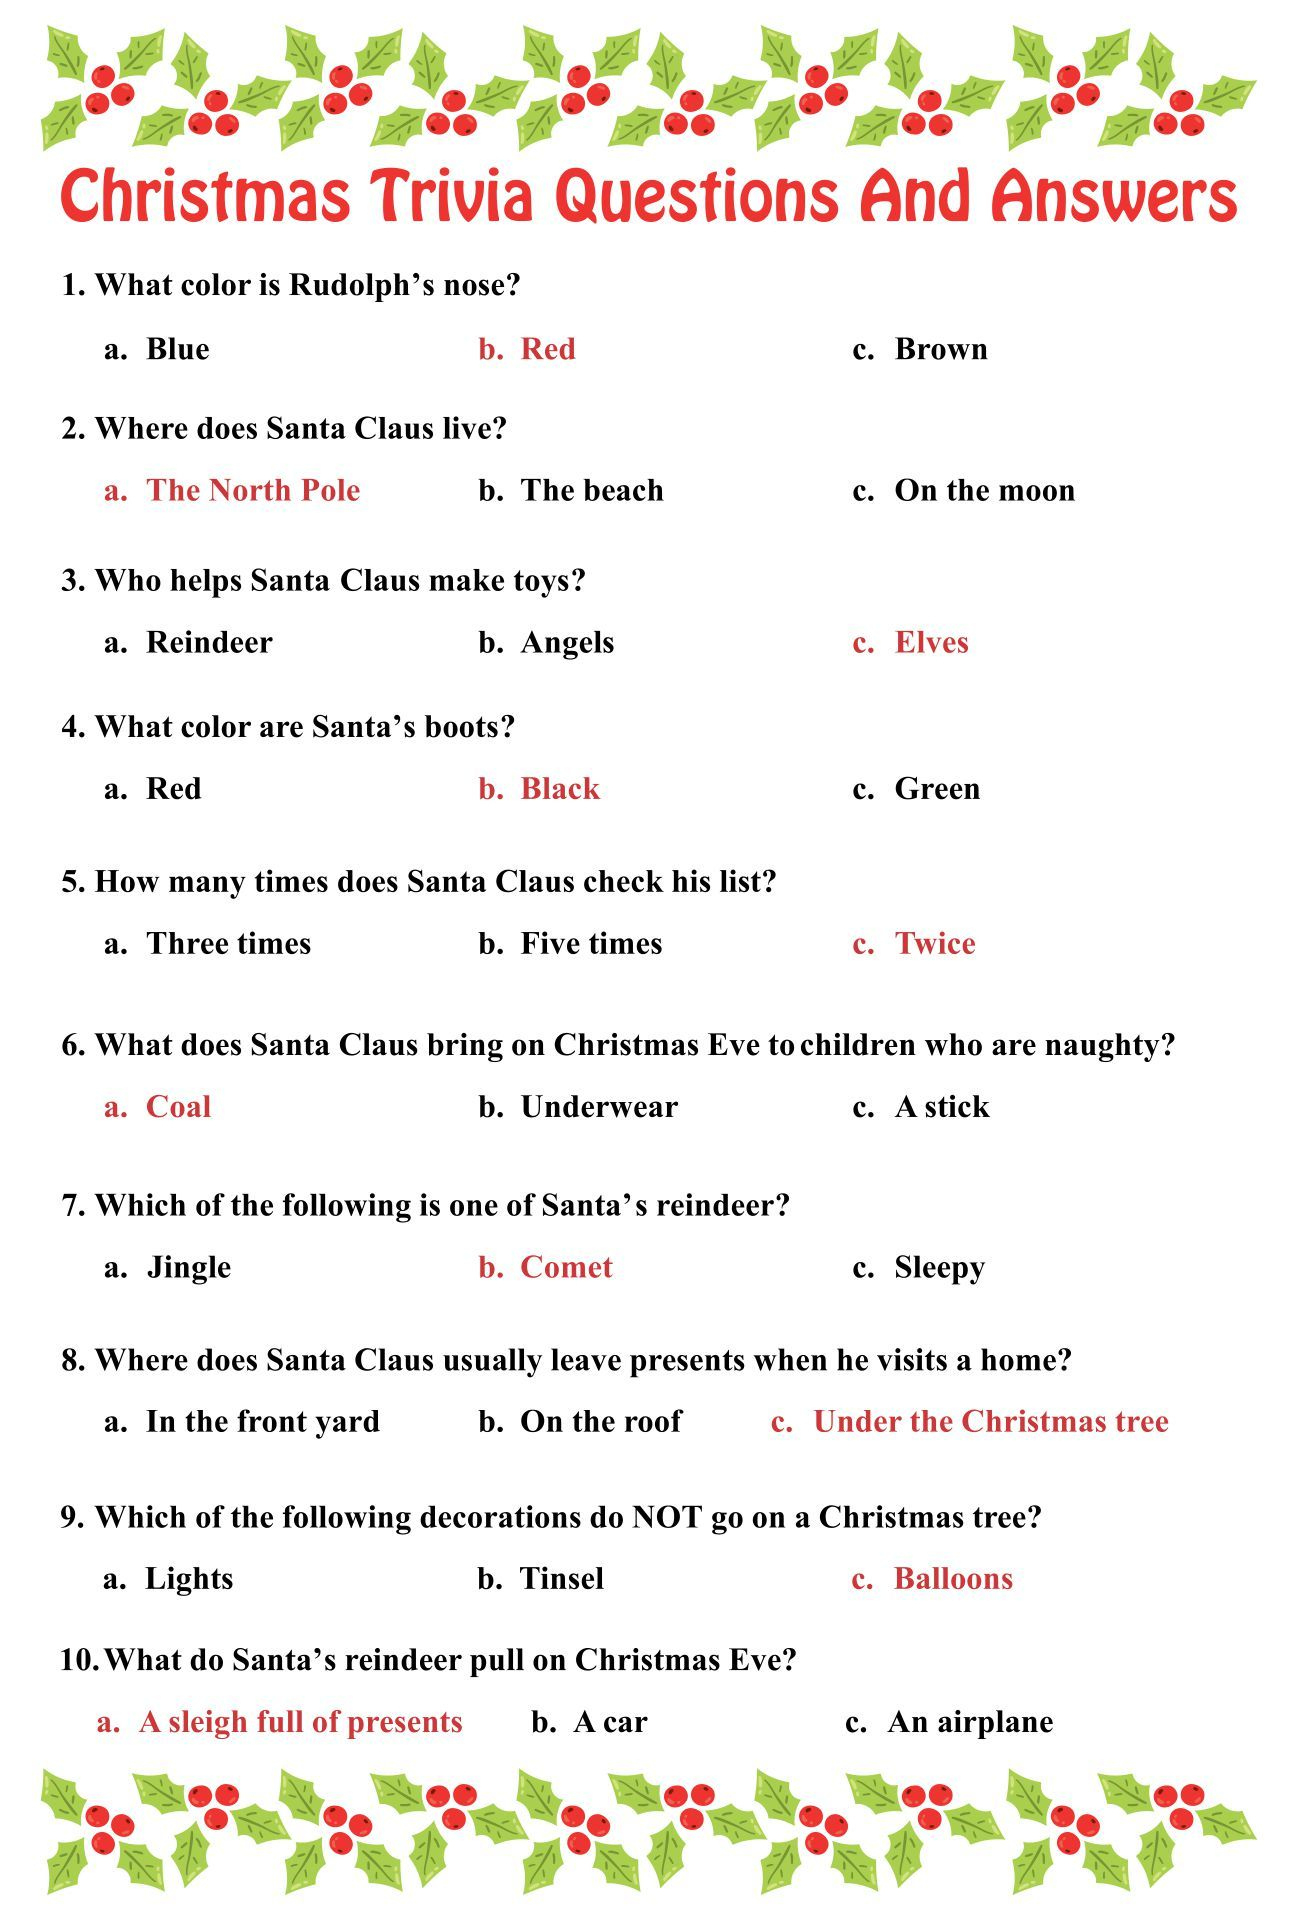 Printable Christmas Trivia Questions | Printablee | Christmas for Free Christmas Picture Quiz Questions And Answers Printable